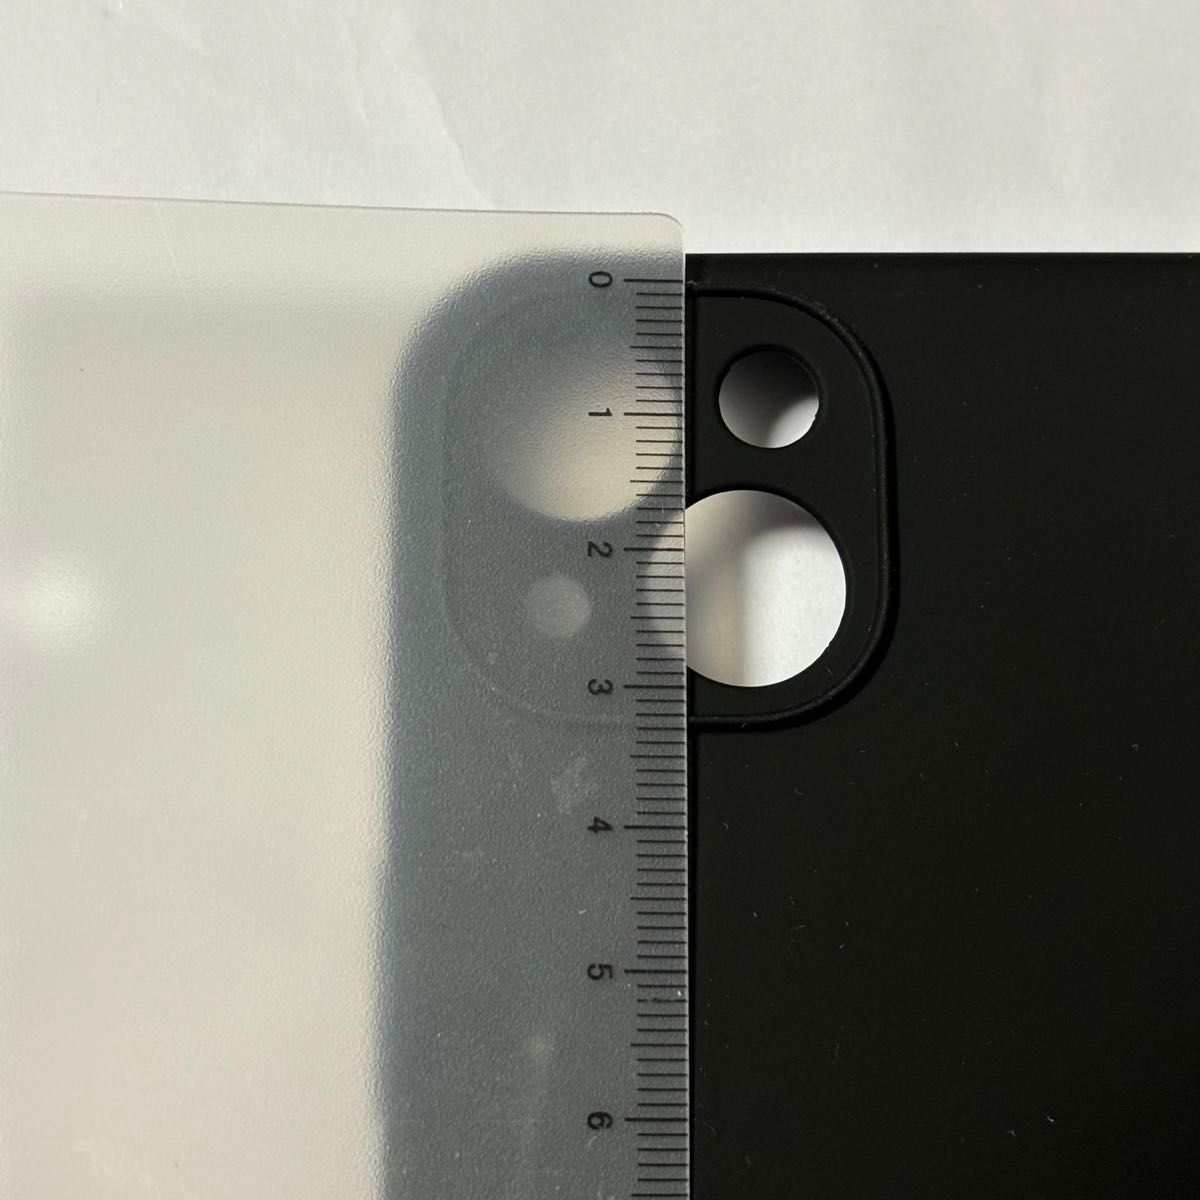 【シンプル♪おしゃれ】iPhone 13 カバー ネック ショルダー ストラップ付き iPhone ブラック マット